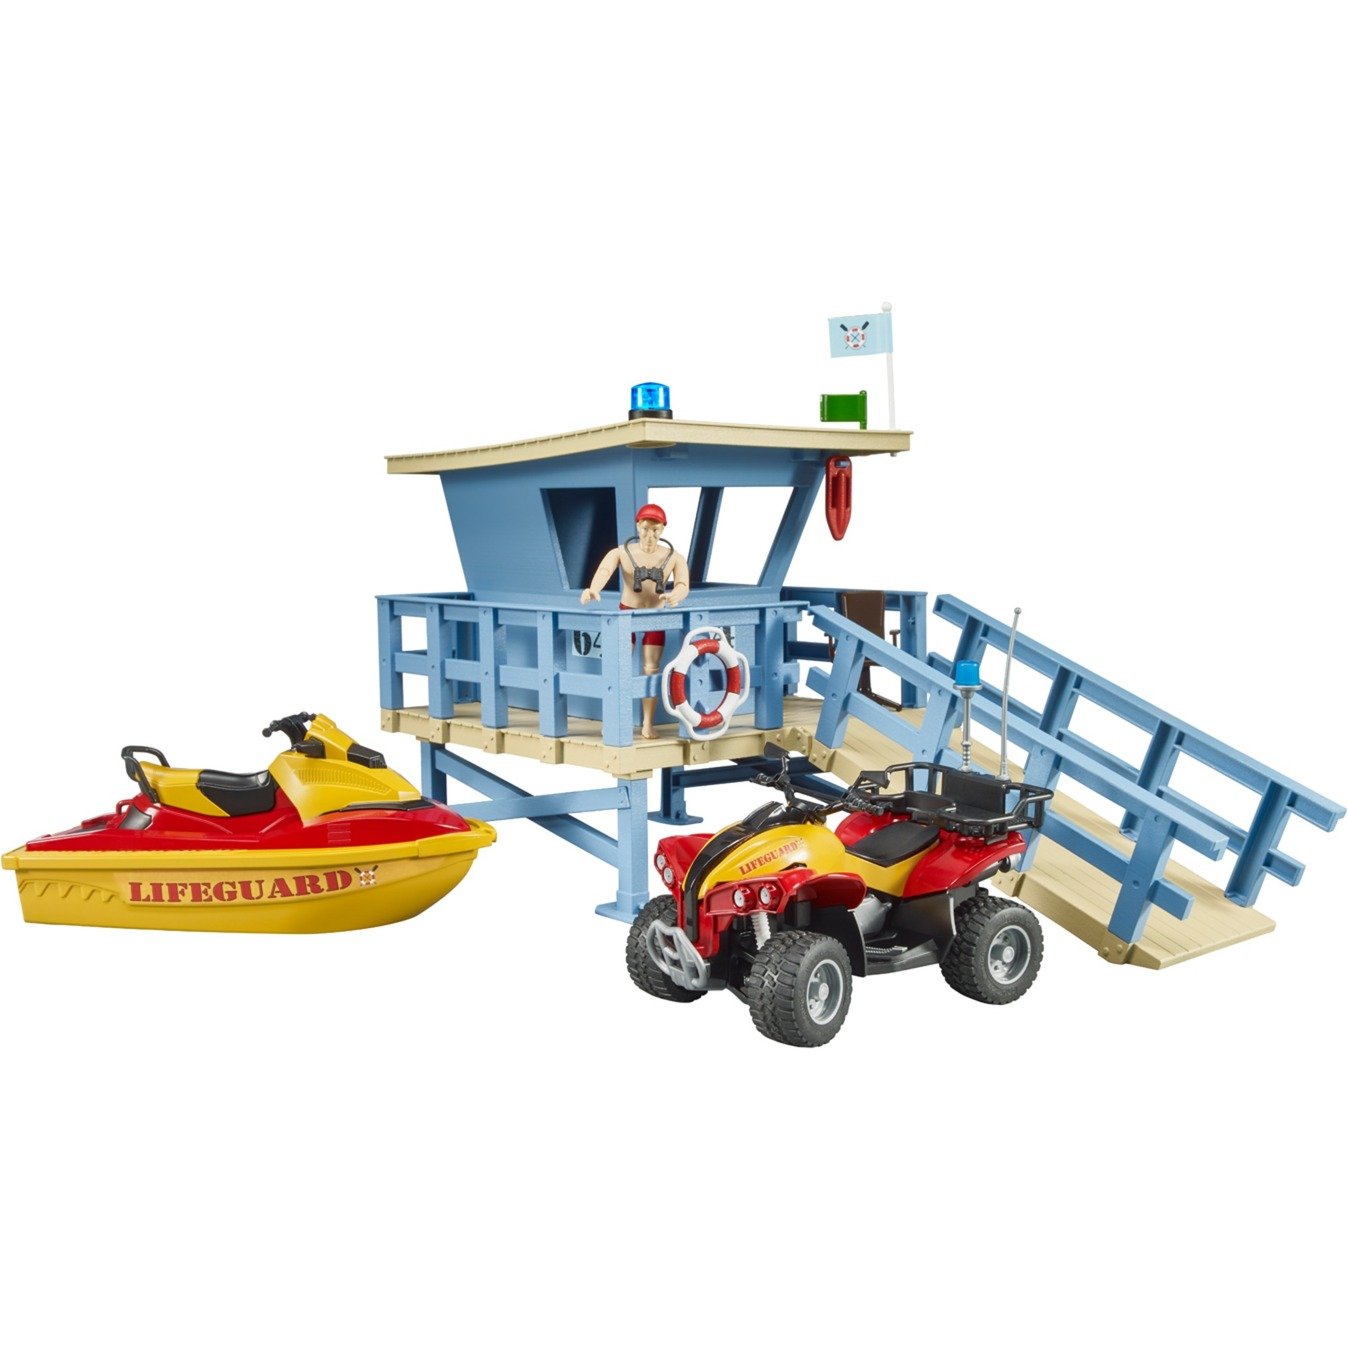 bworld Life Guard Station mit Quad und Personal Water Craft, Spielfigur von Bruder